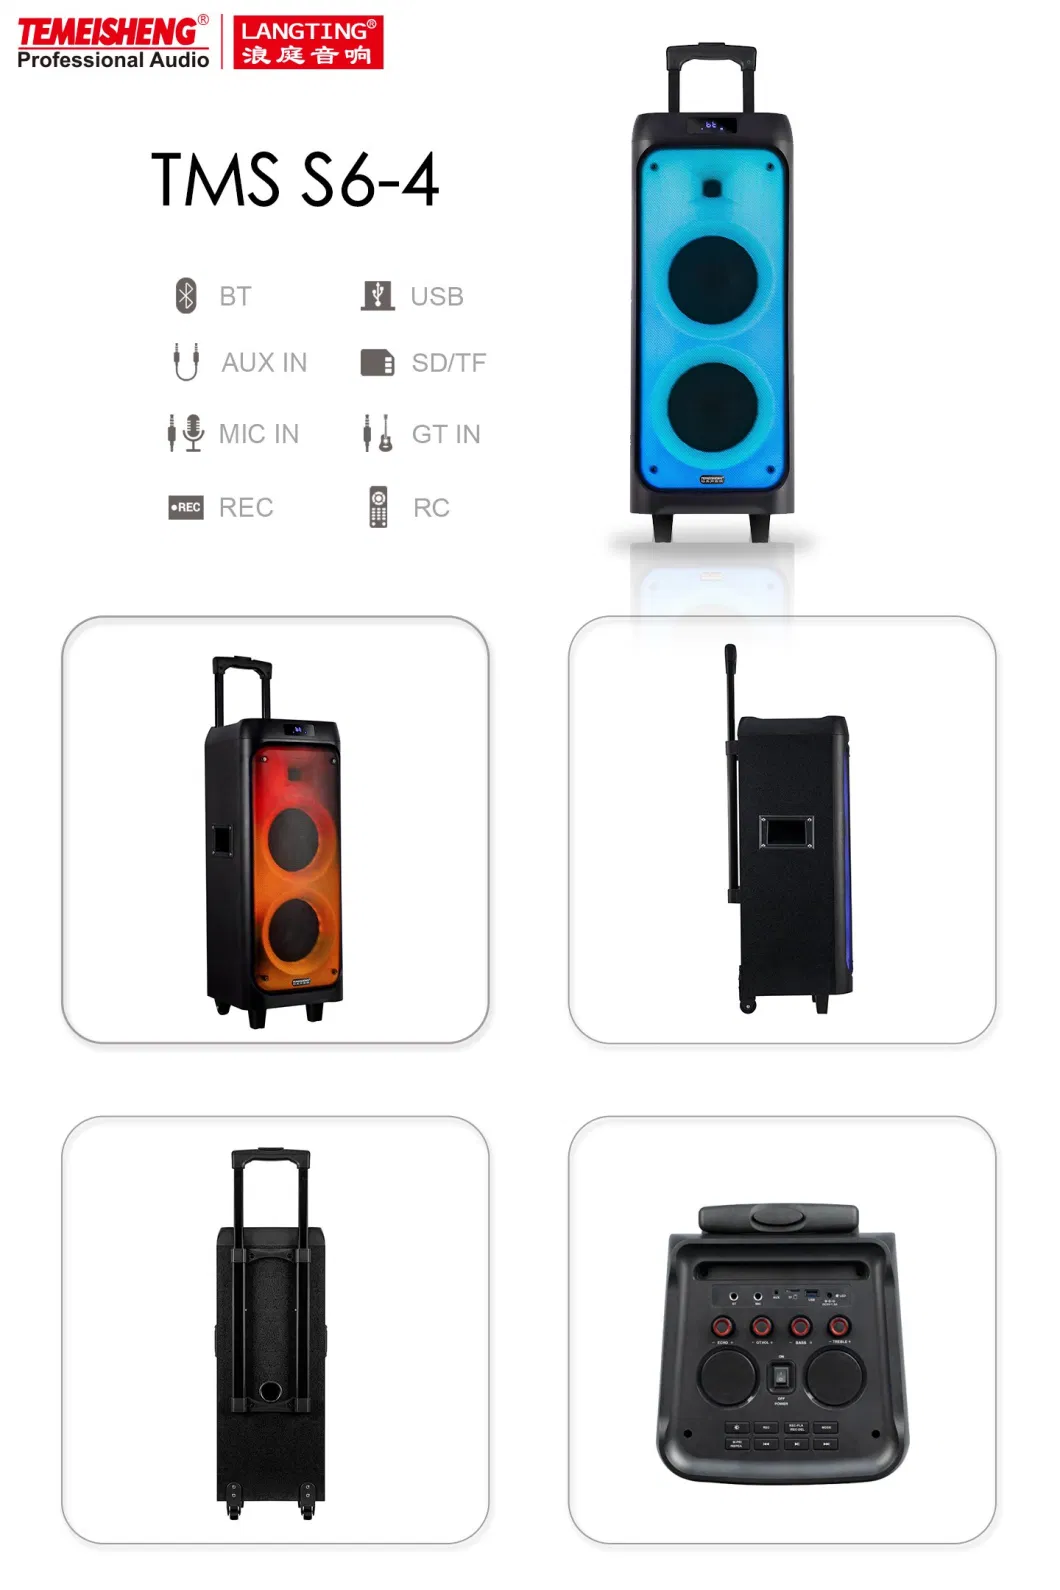 Temeisheng OEM Trolley Speaker Fire Light Dual 6.5inch Tms-S6-4